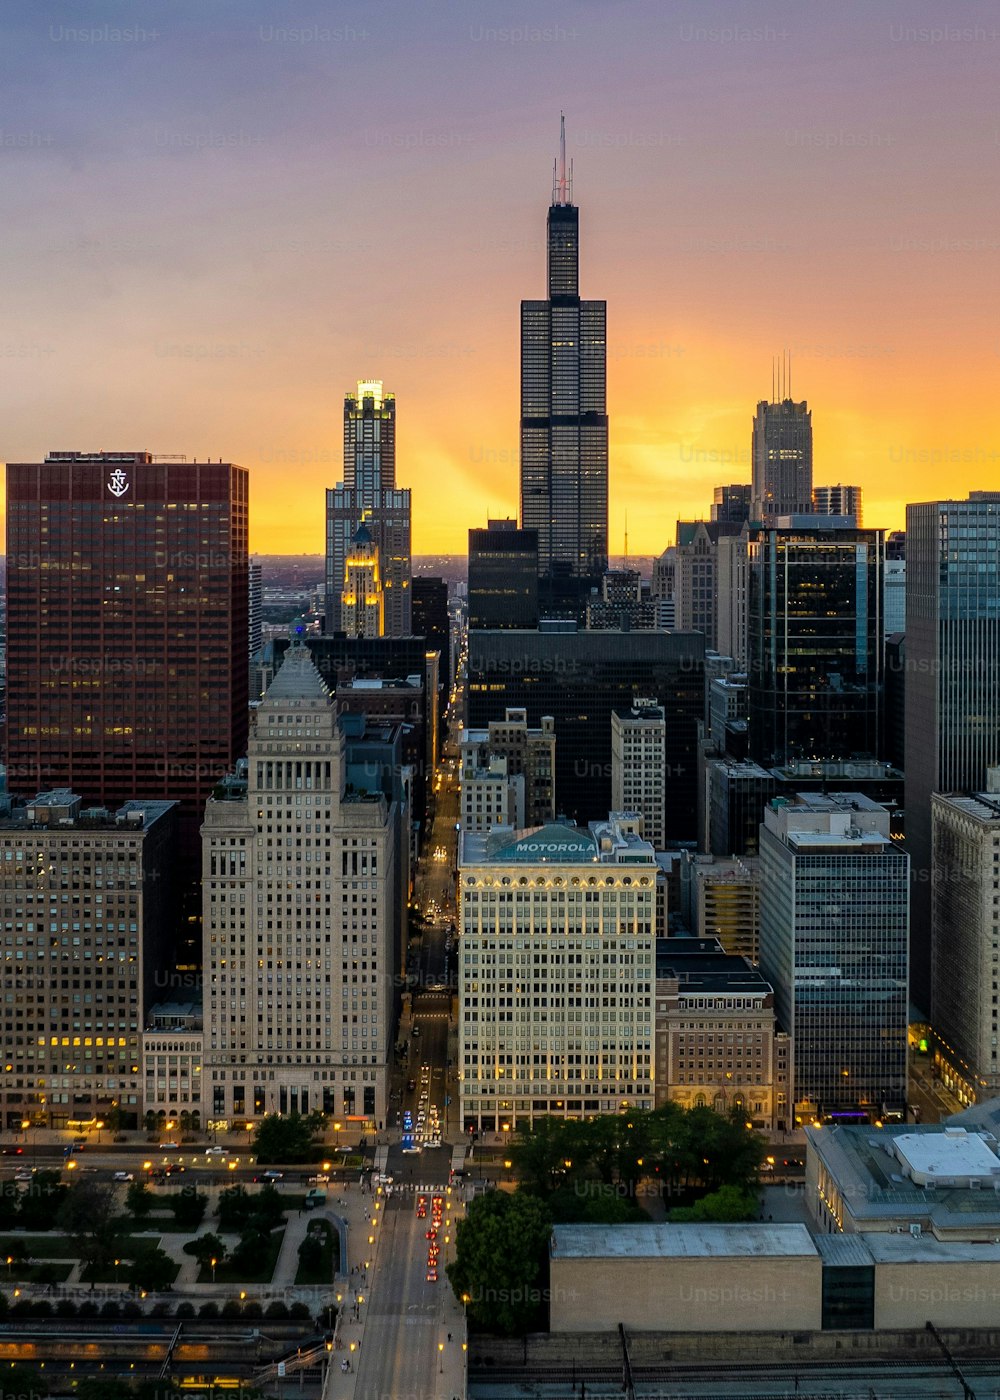 흐린 하늘을 배경으로 해질녘에 높은 고층 빌딩이 있는 시카고 다운타운의 조감도